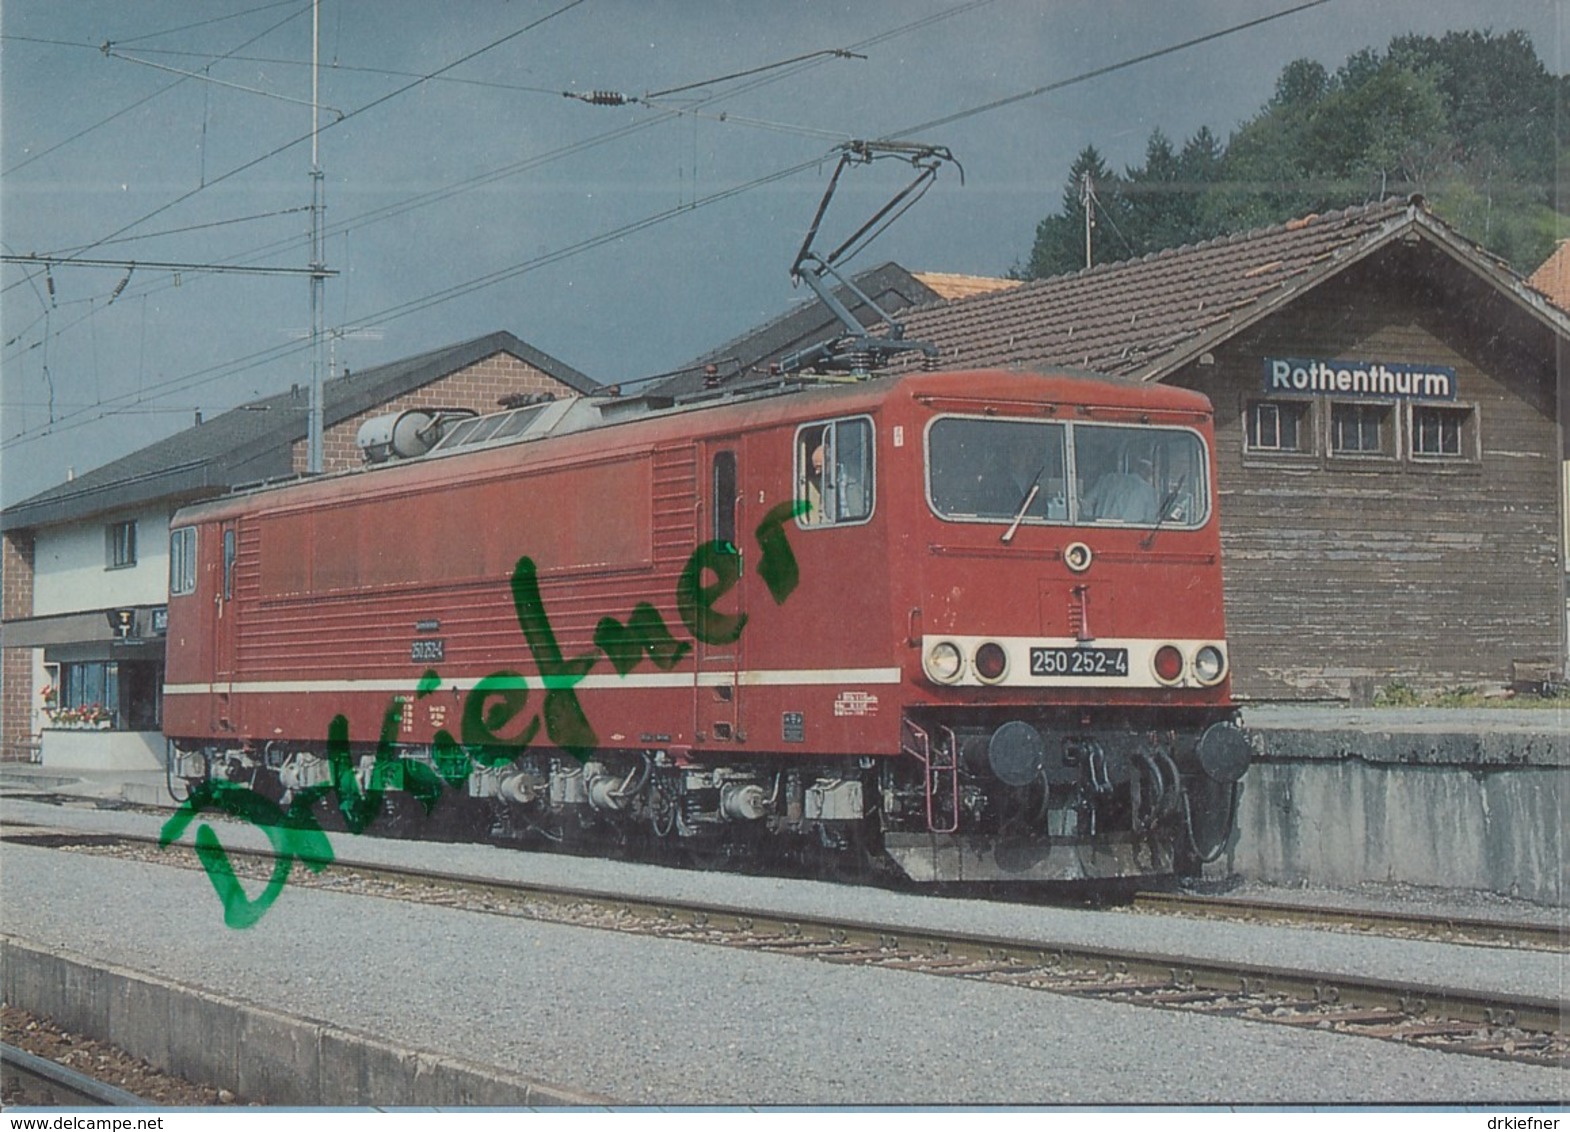 DRB  250 252-4, Elektr. Güterzug Lokomotive Im Bf  Rothenthurm 1990, Deutsche Reichsbahn, Eisenbahn, Train - Trains